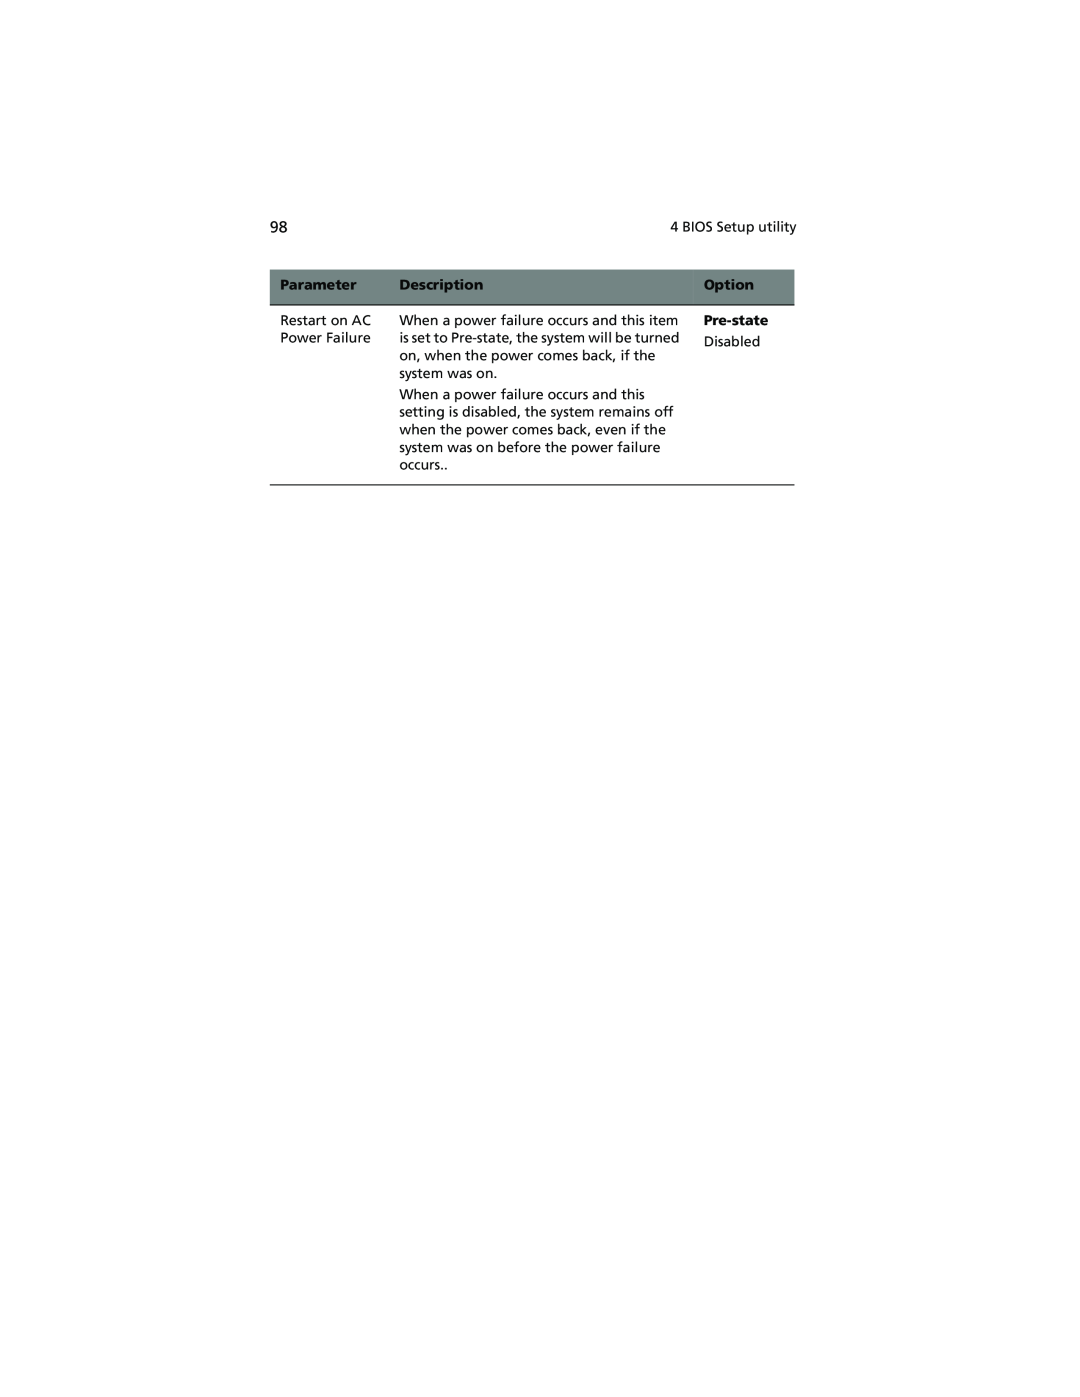 Acer Altos G610 manual Parameter, Description, Option, Pre-state 